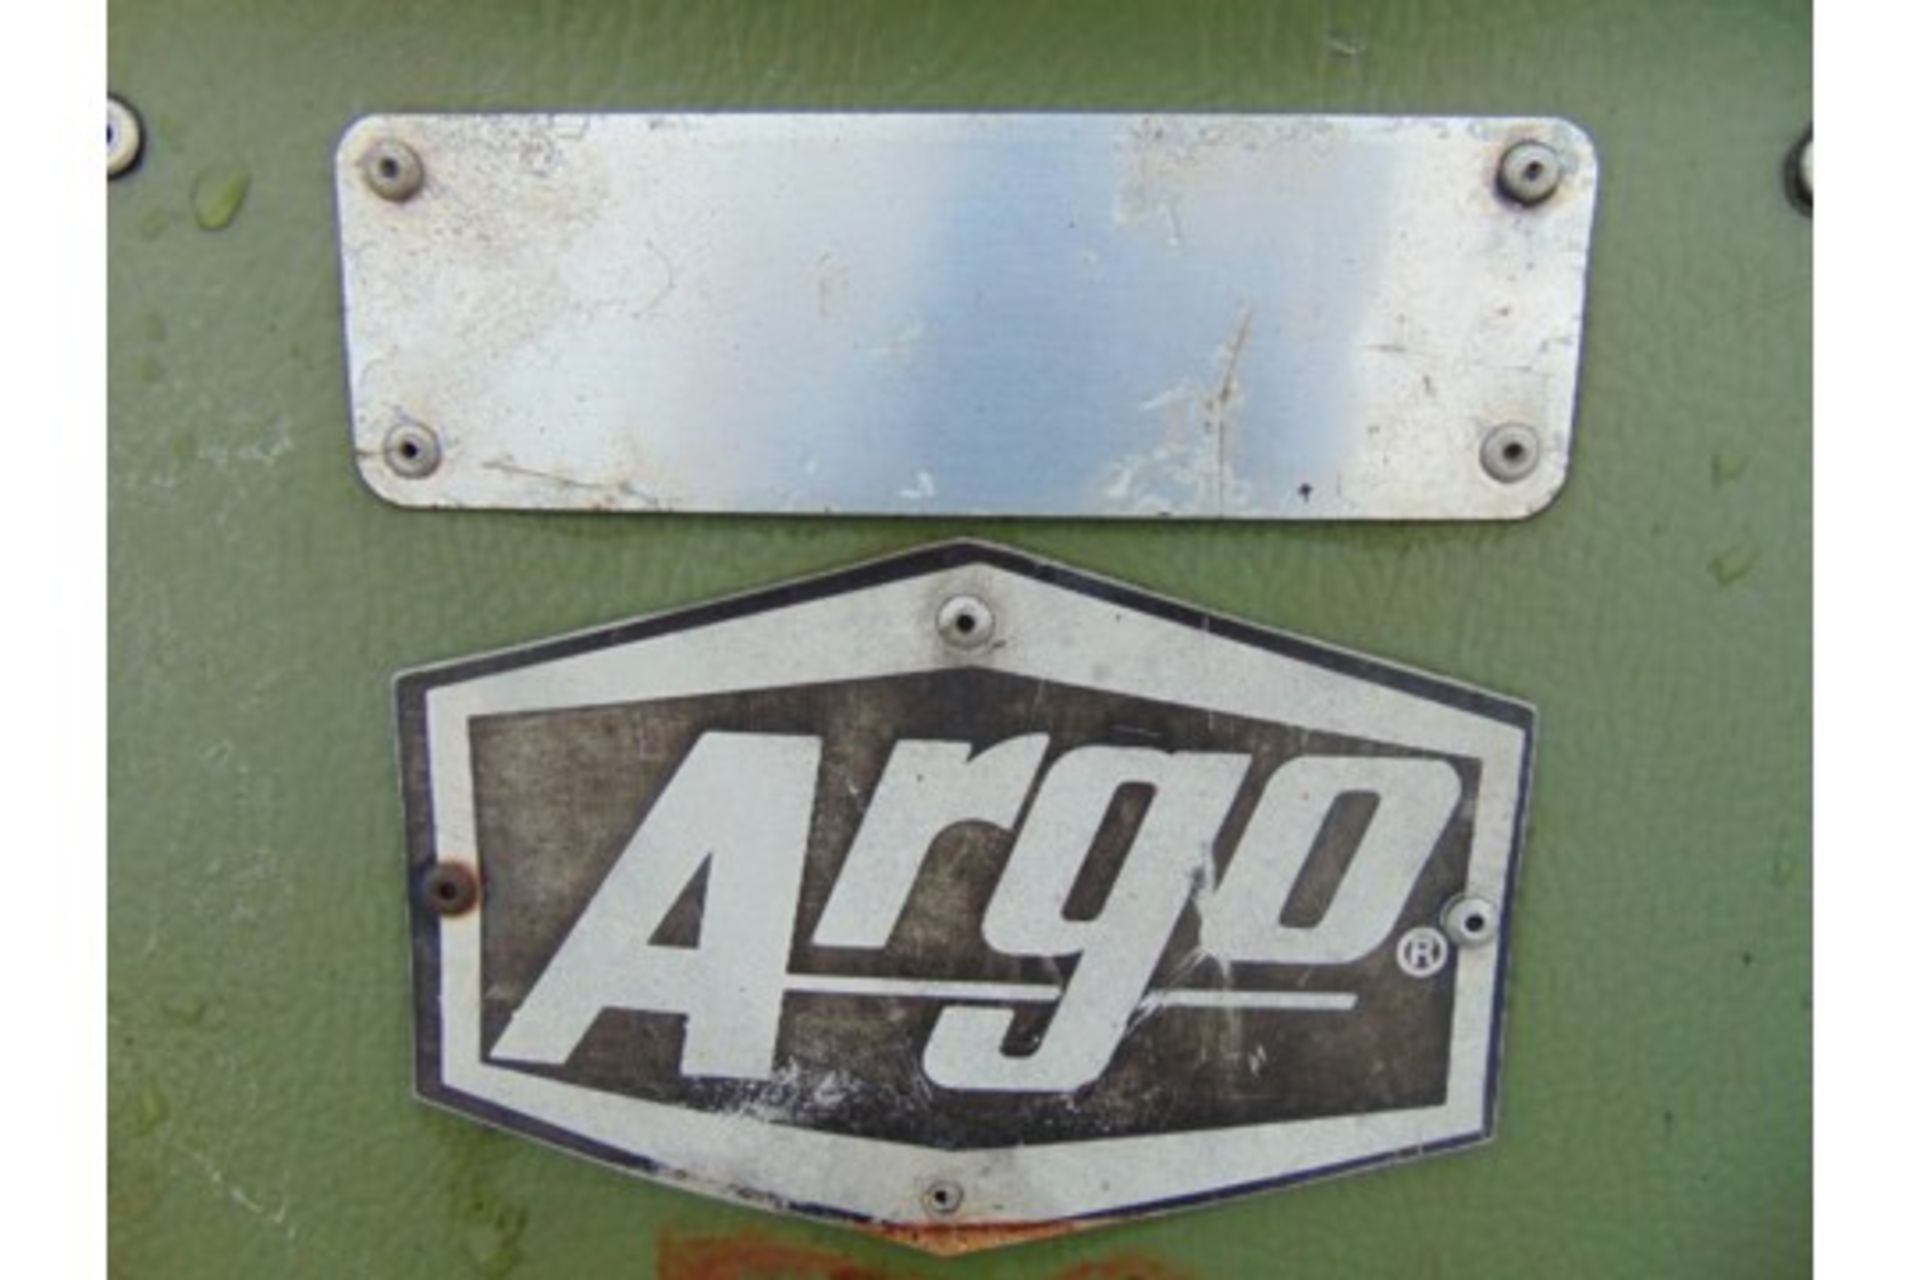 Argocat 8x8 Magnum Amphibious ATV with Canopy - Image 16 of 16